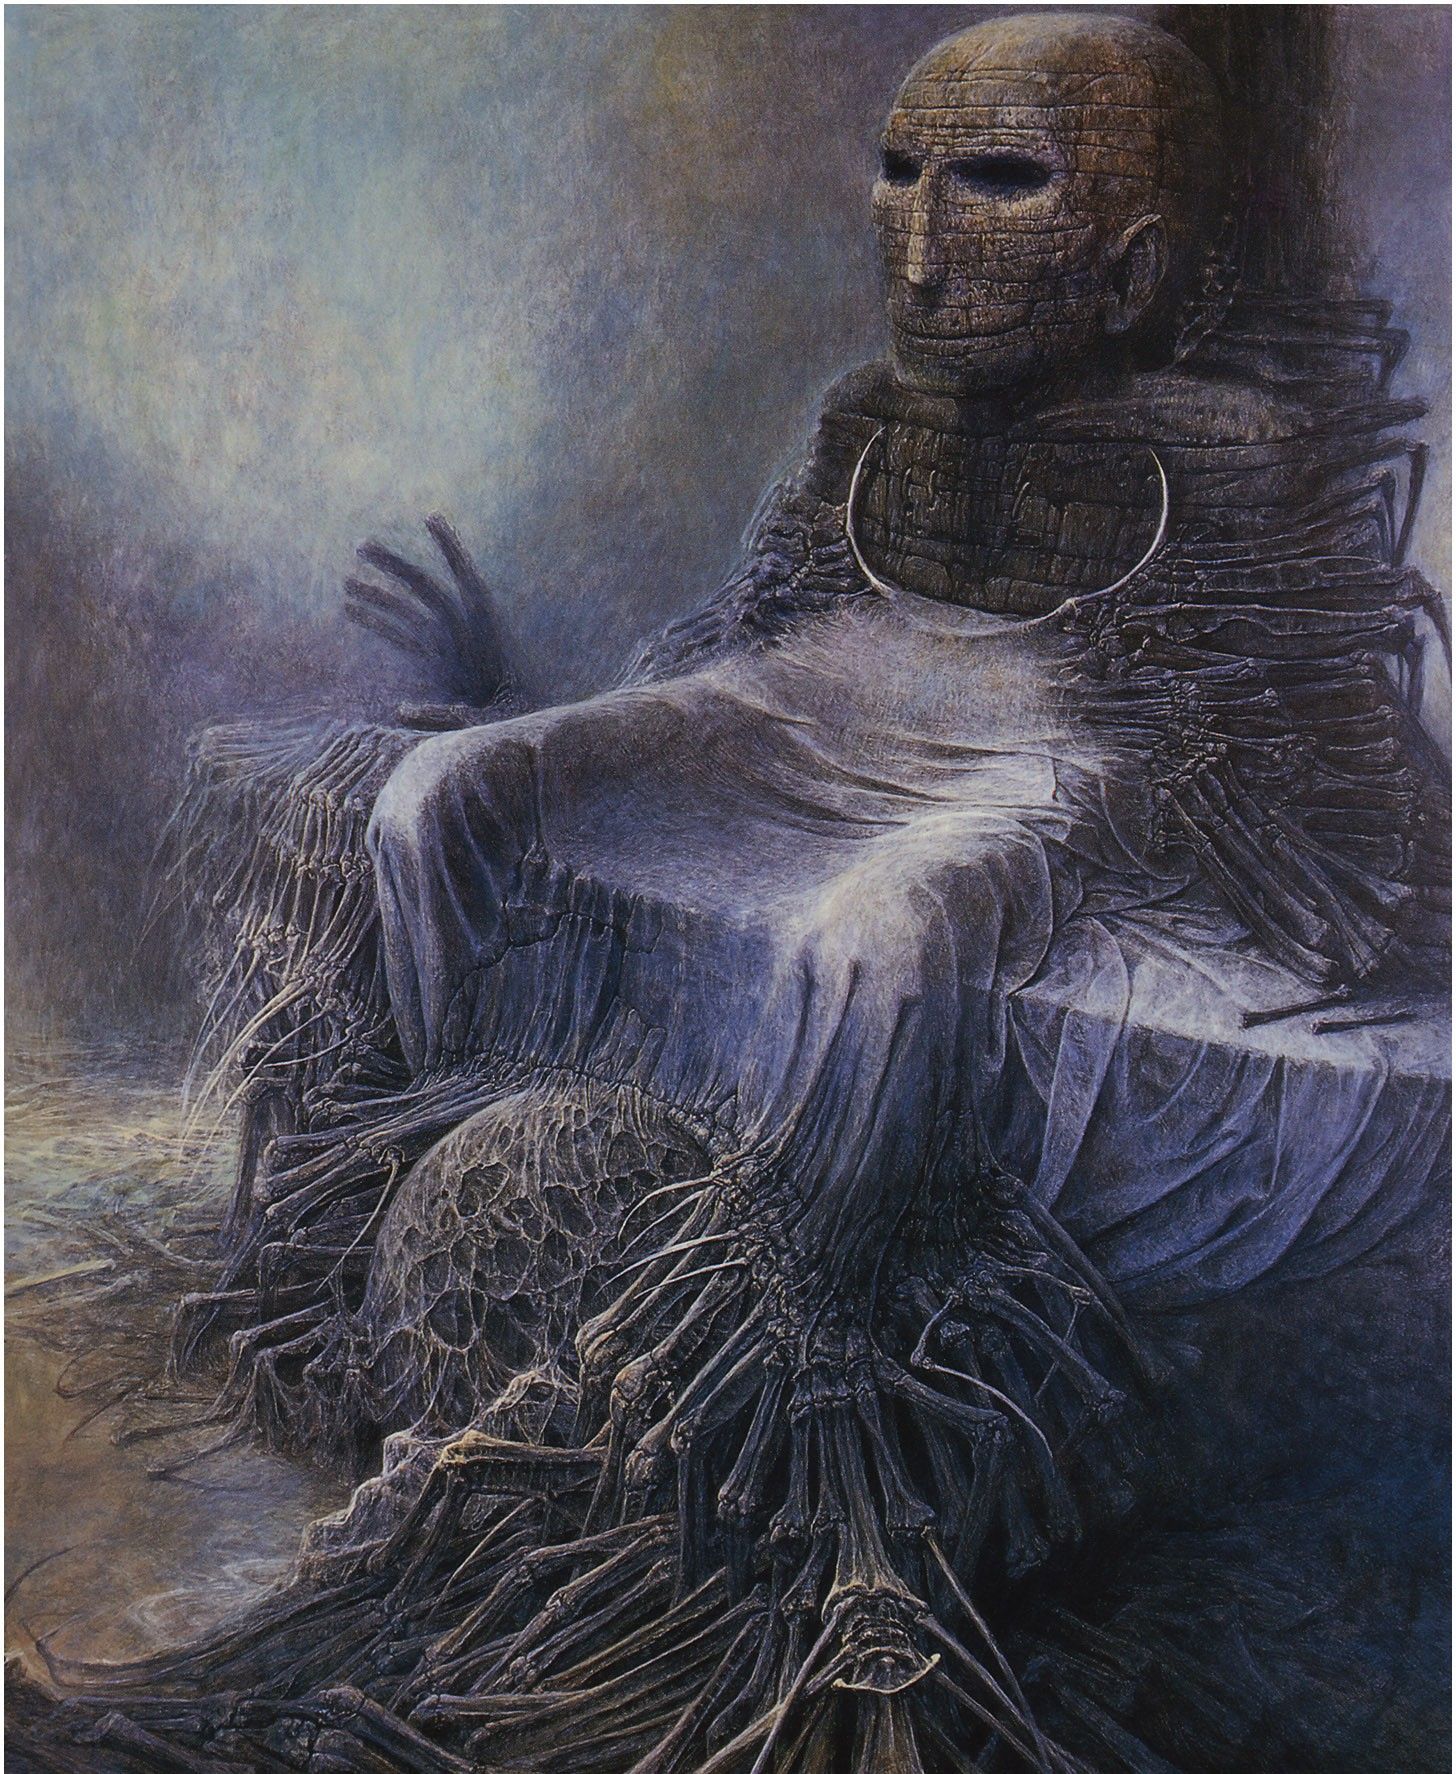 Zdzisław Beksiński, picture, artwork, skull, surrealx1774